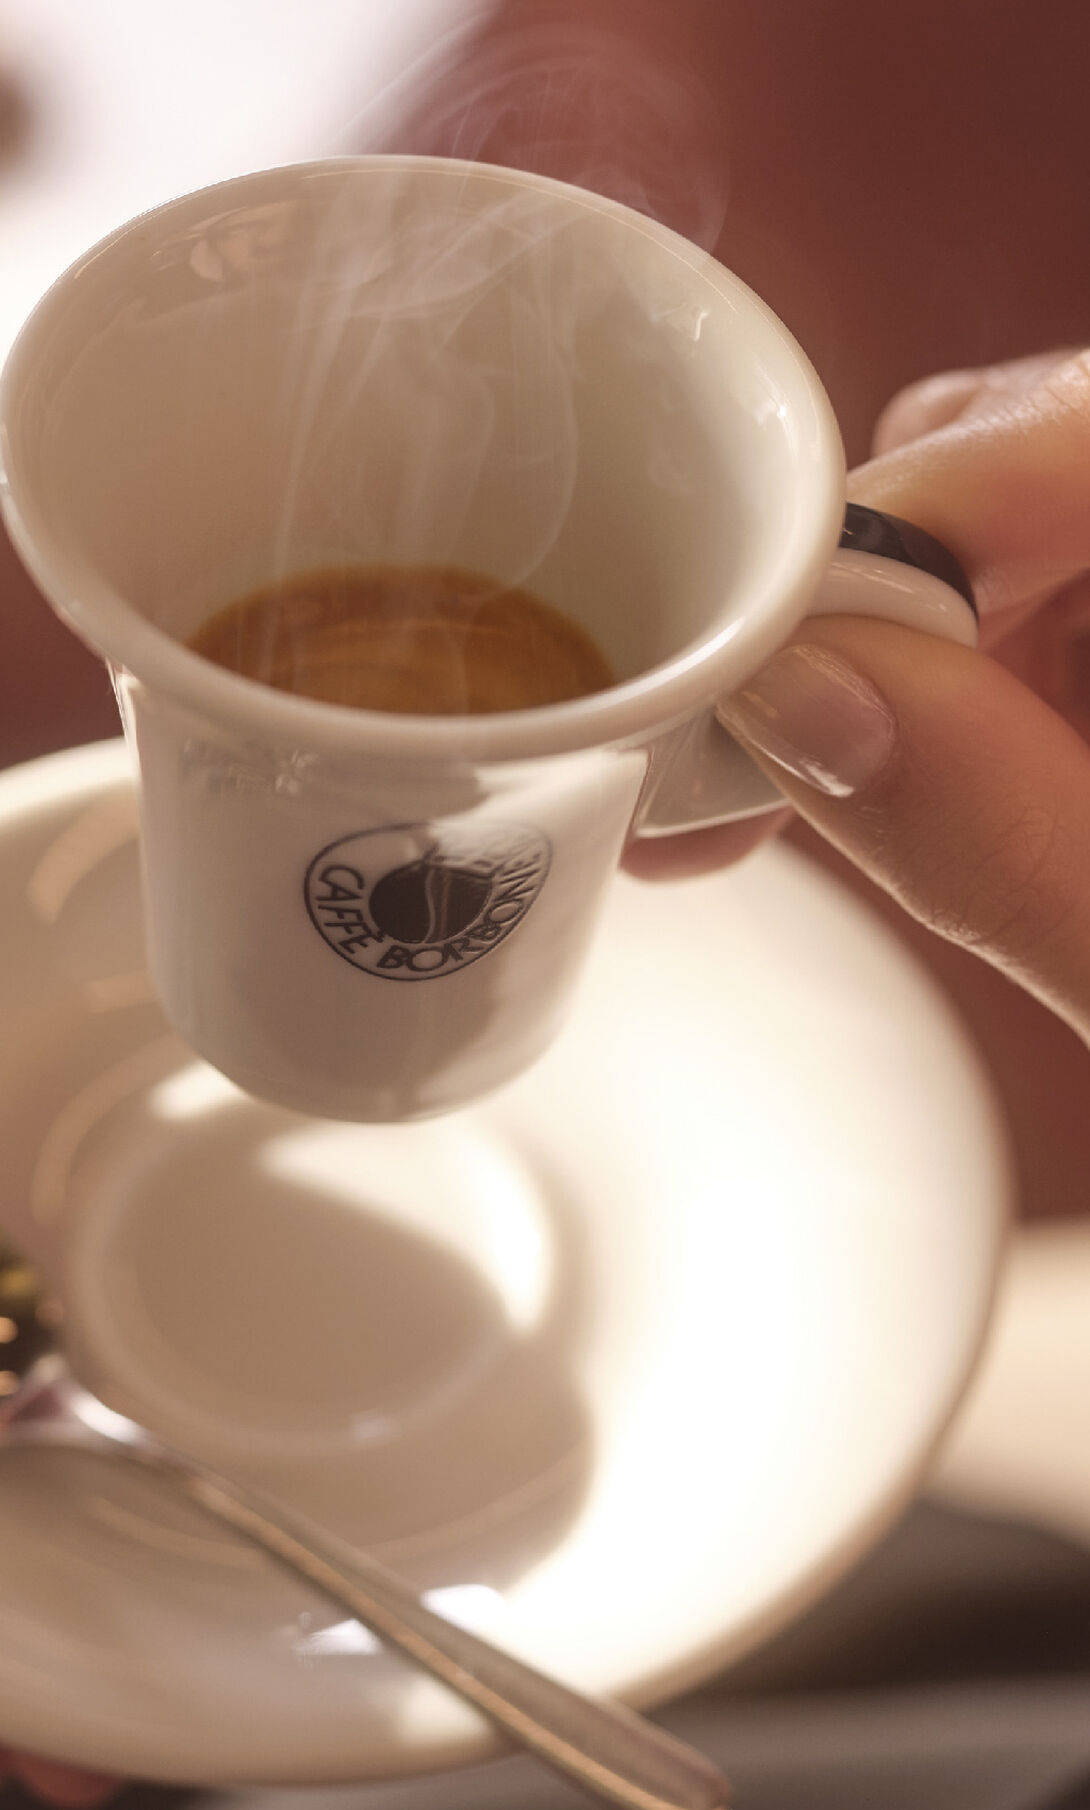 Caffe Borbone - Decisa Espresso Ground